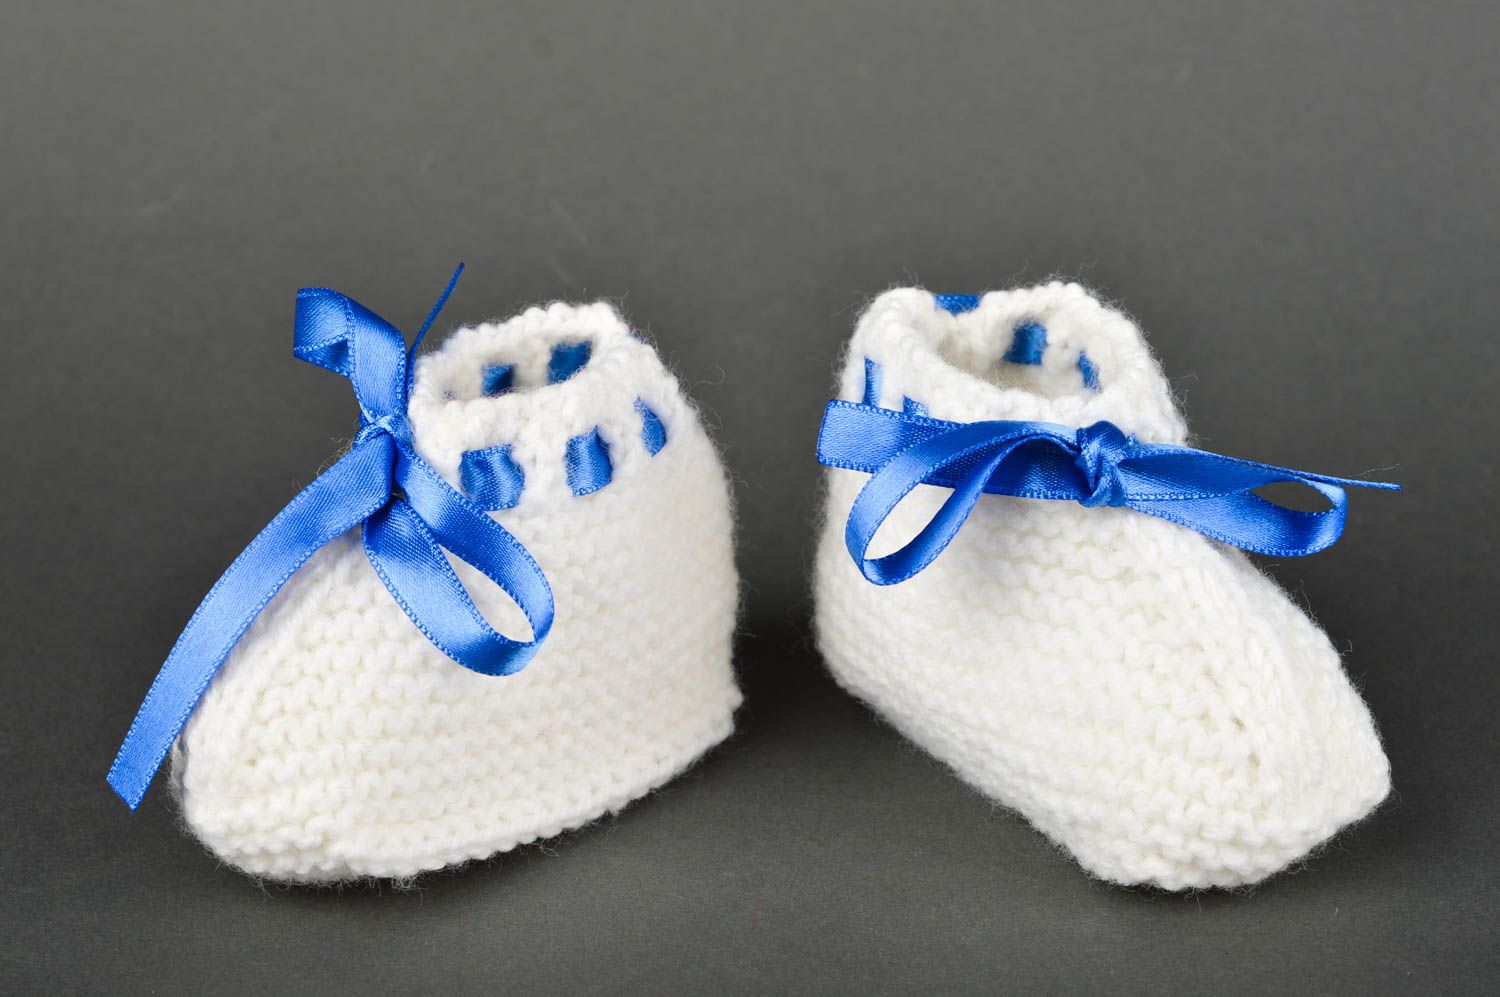 Handmade crochet baby booties warm booties baby accessories gift ideas photo 2